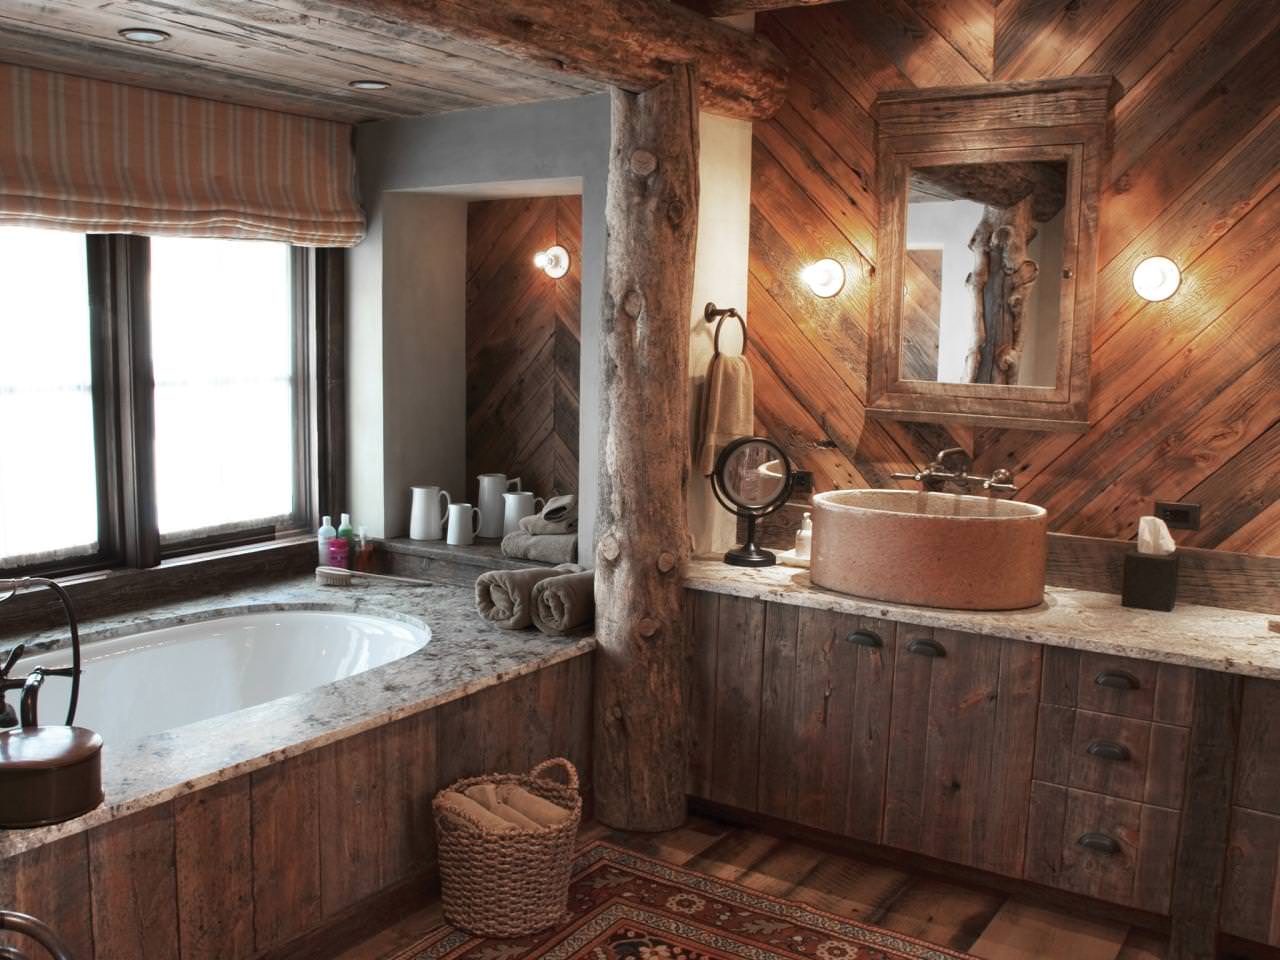 Kupaonica u drvenoj kući: fotografija interijera prekrasnog završetka u kući iz bara